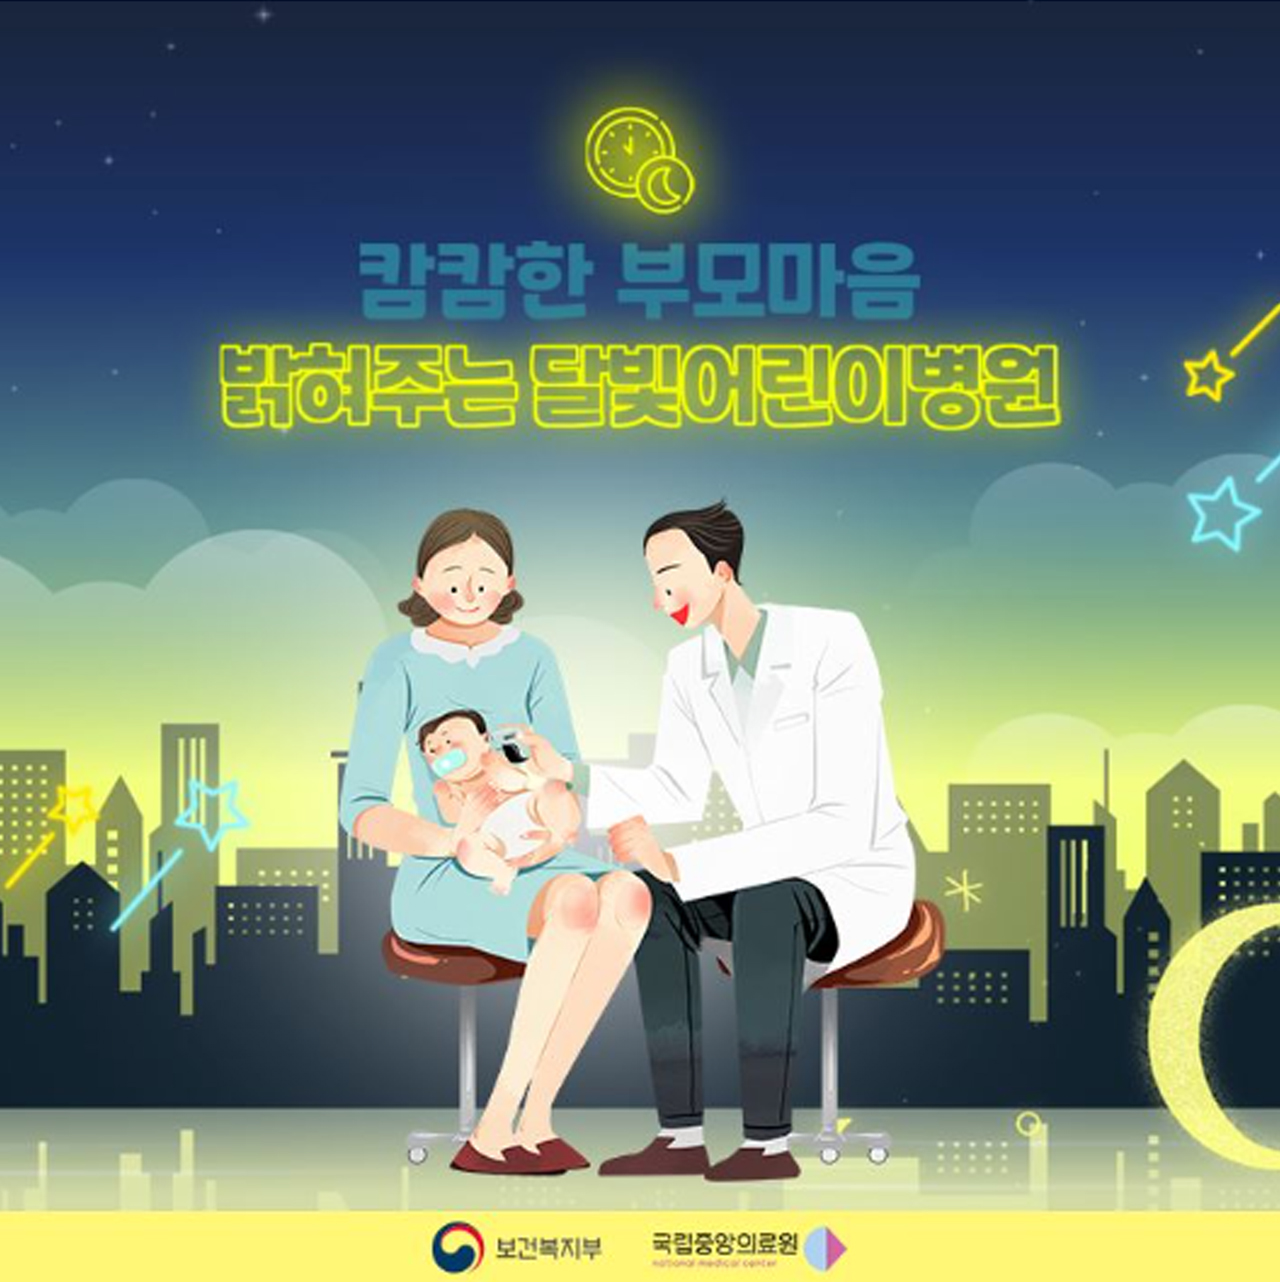 보건복지부의 달빛어린이병원 홍보 자료.